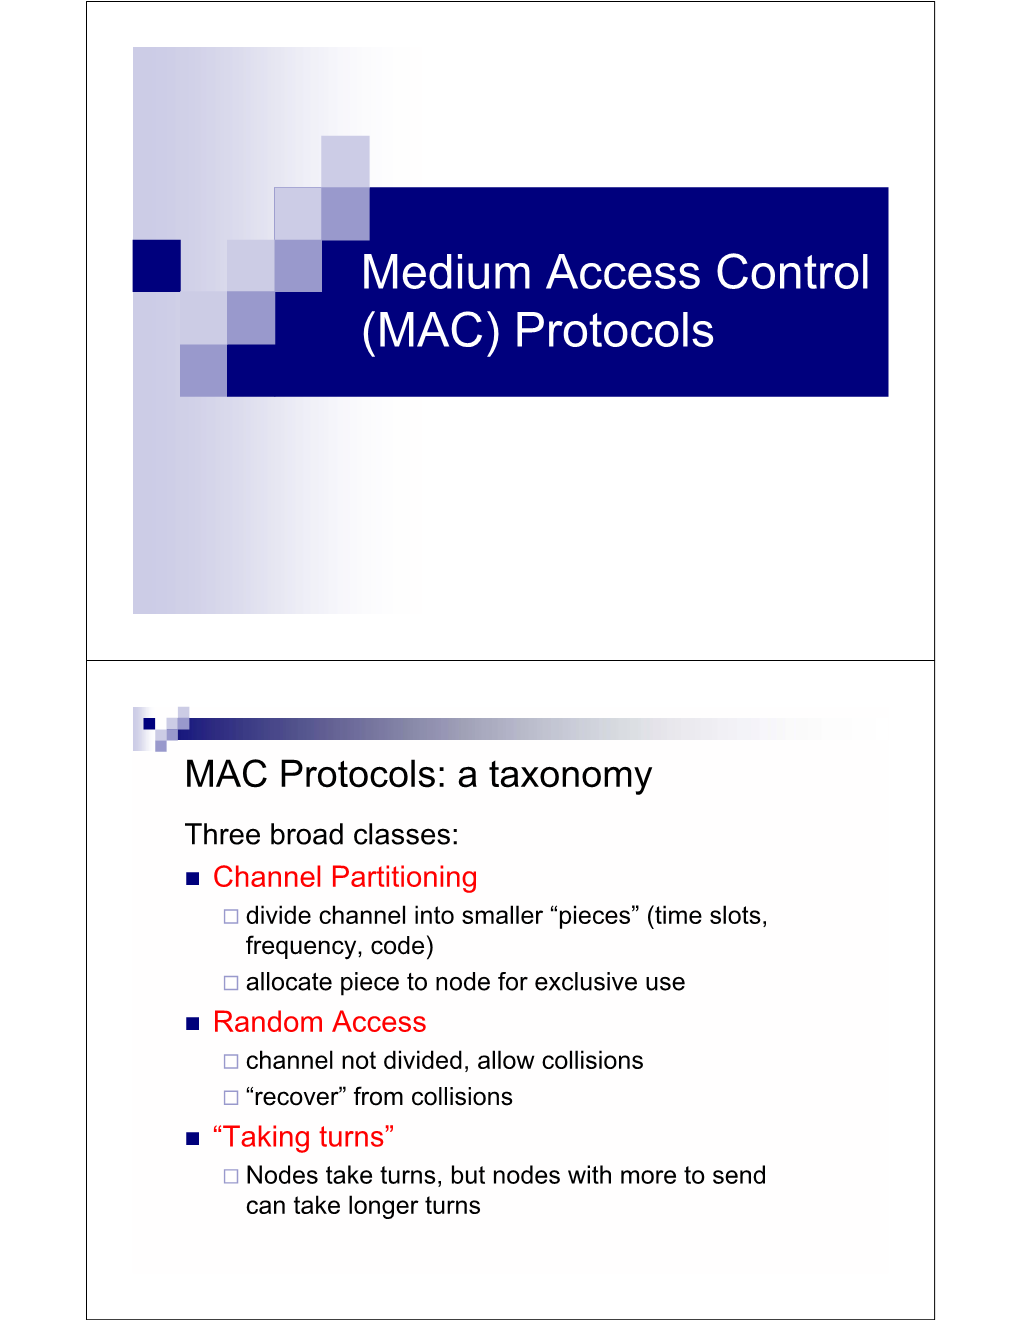 Medium Access Control (MAC) Protocols